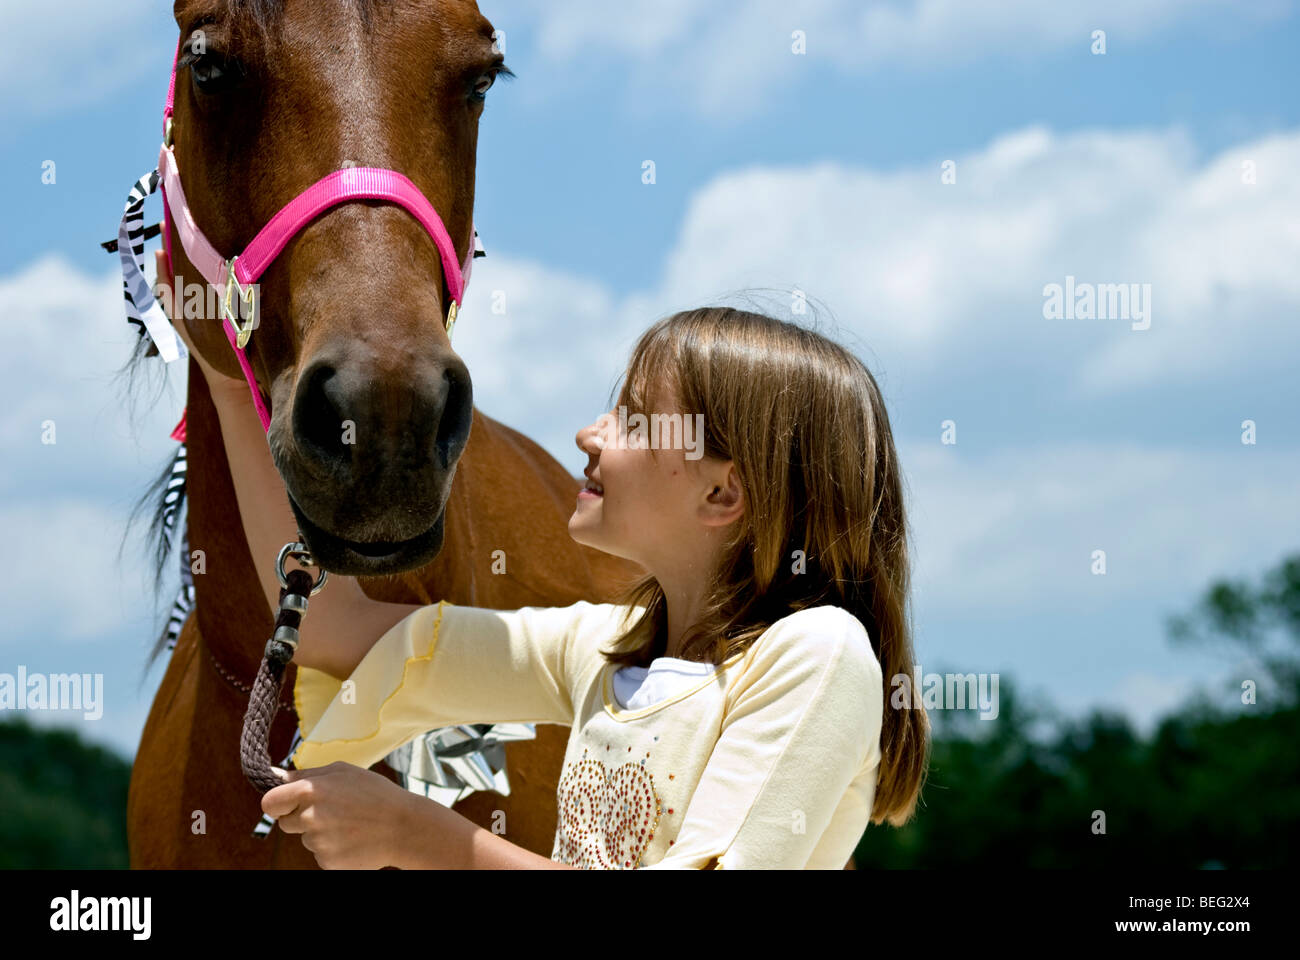 Ein kleines Mädchen, voller Vorfreude auf ein Pferd sucht, die ihr zum Geburtstag geschenkt worden ist. Stockfoto